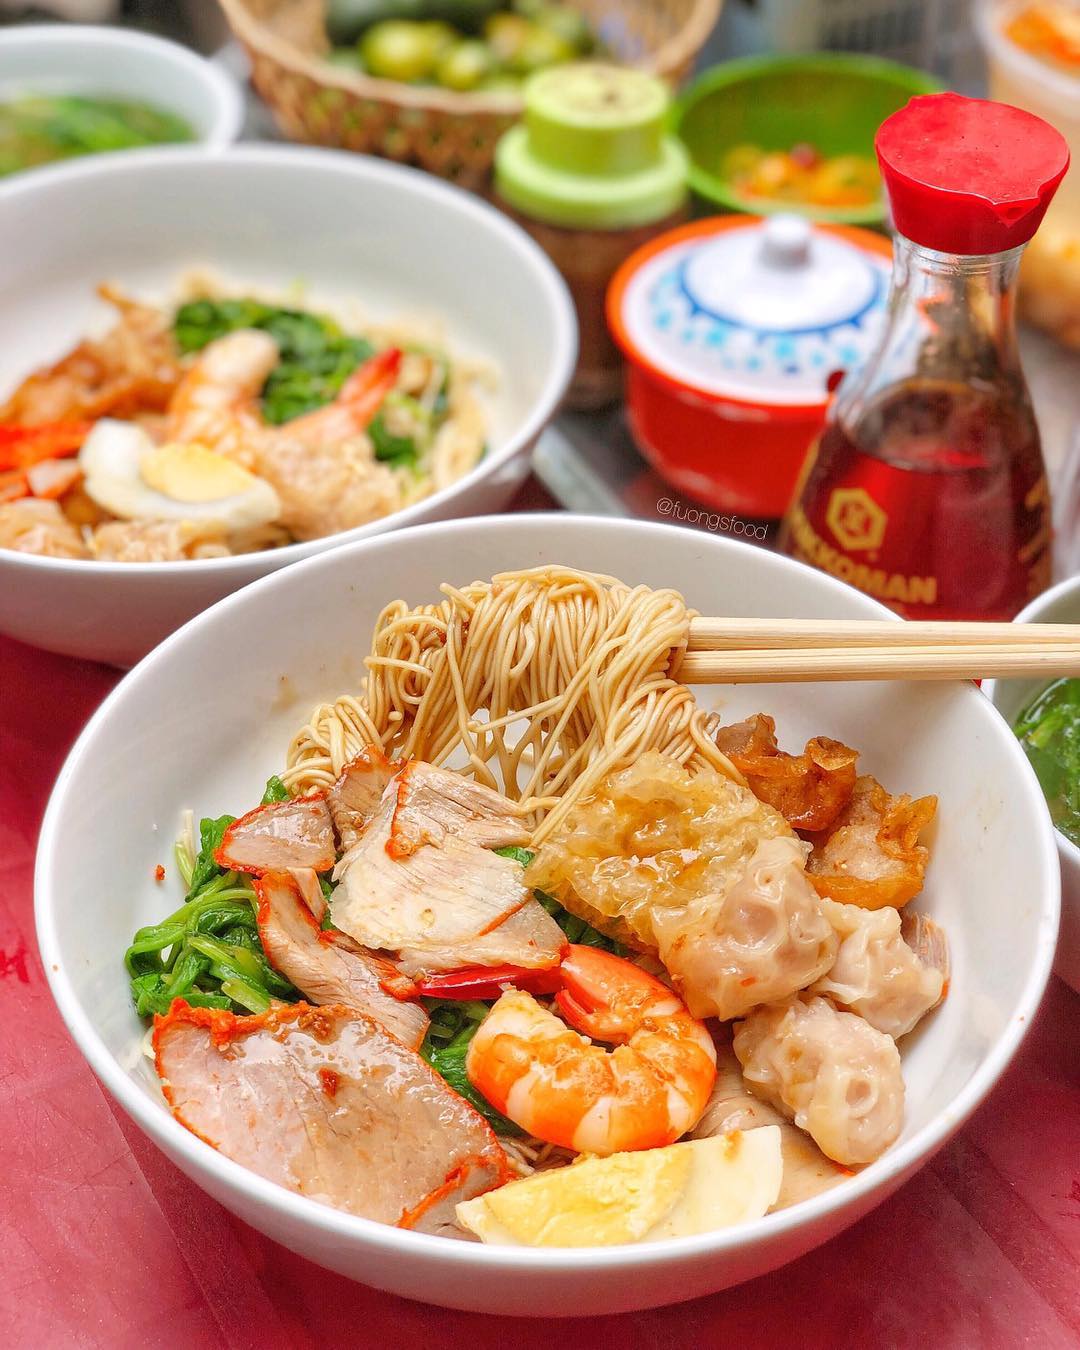 Còn nữa, còn nữa, nếu như bạn đã có riêng cho mình danh sách những quán mì vằn thắn ngon ở Hà Nội thì hãy chia sẻ với mọi người nhé để chúng mình làm dày thêm bí kíp ăn uống ngon - bổ - chất lượng tại Hà Nội (Nguồn ảnh: Instagram)